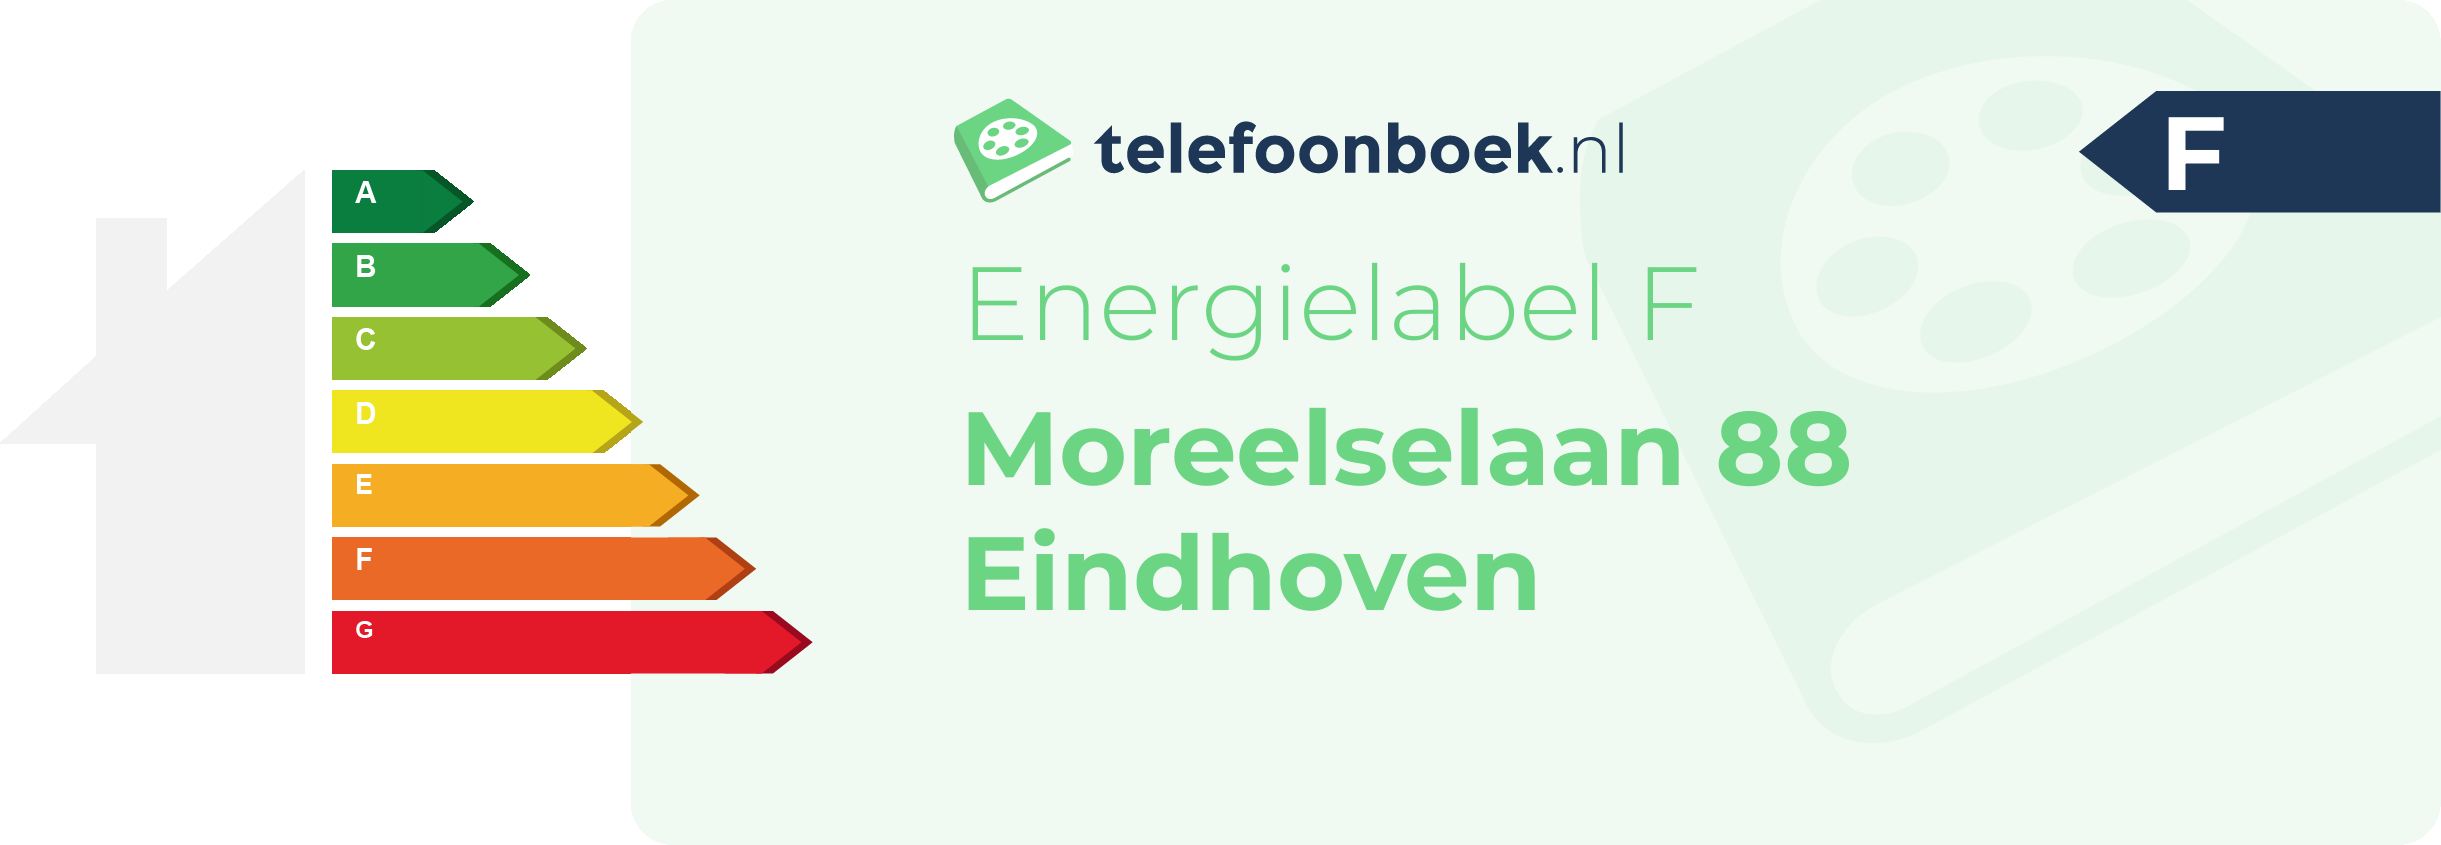 Energielabel Moreelselaan 88 Eindhoven